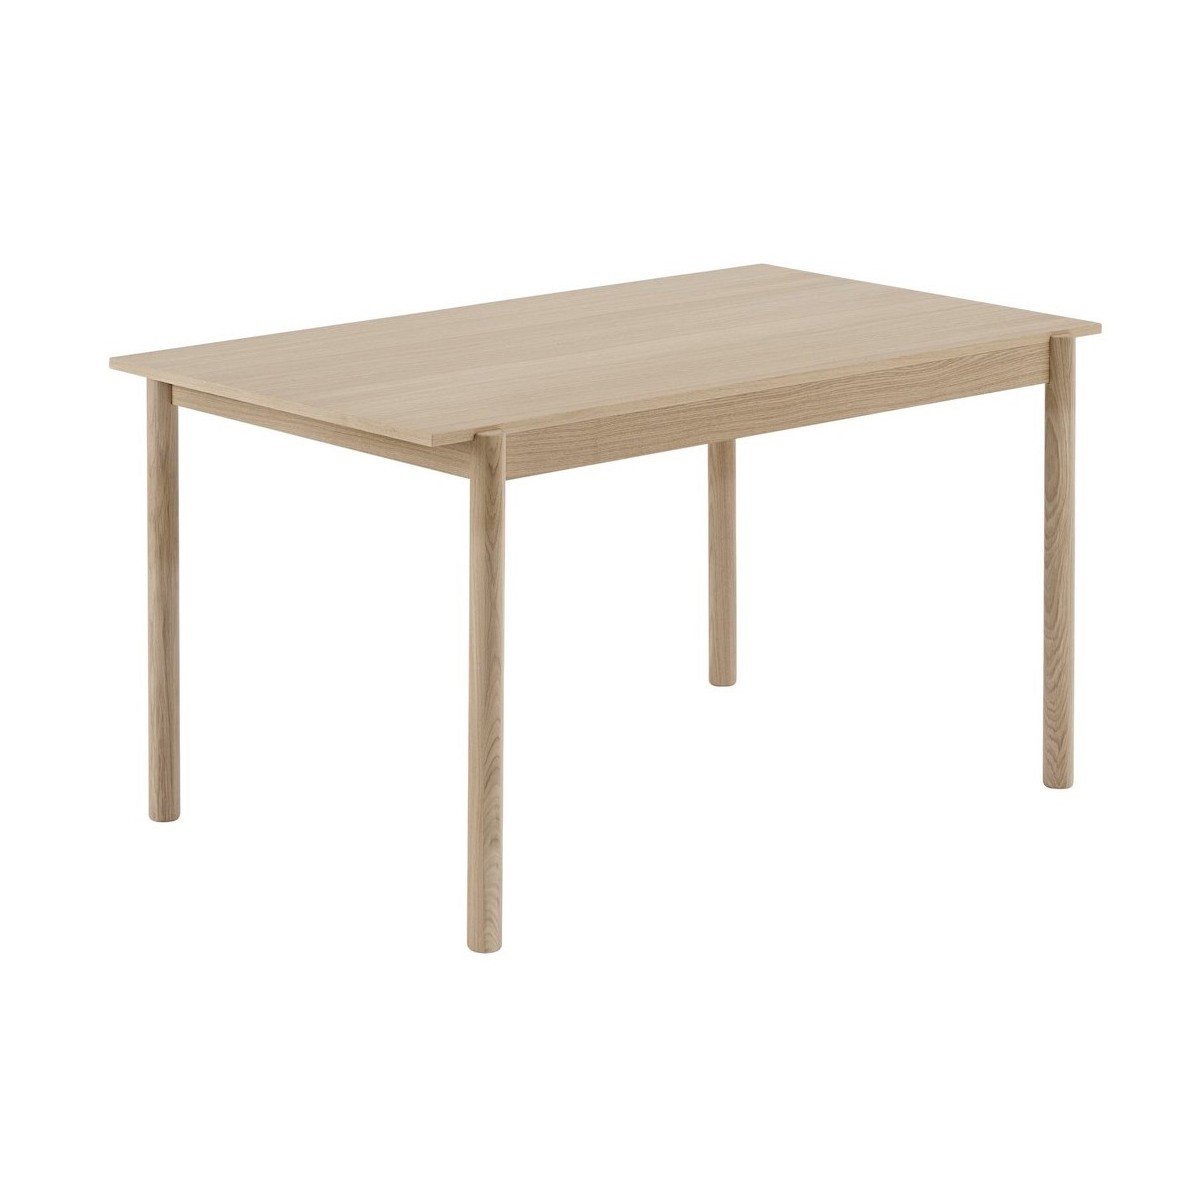 140 x 90cm oak - Linear dining table